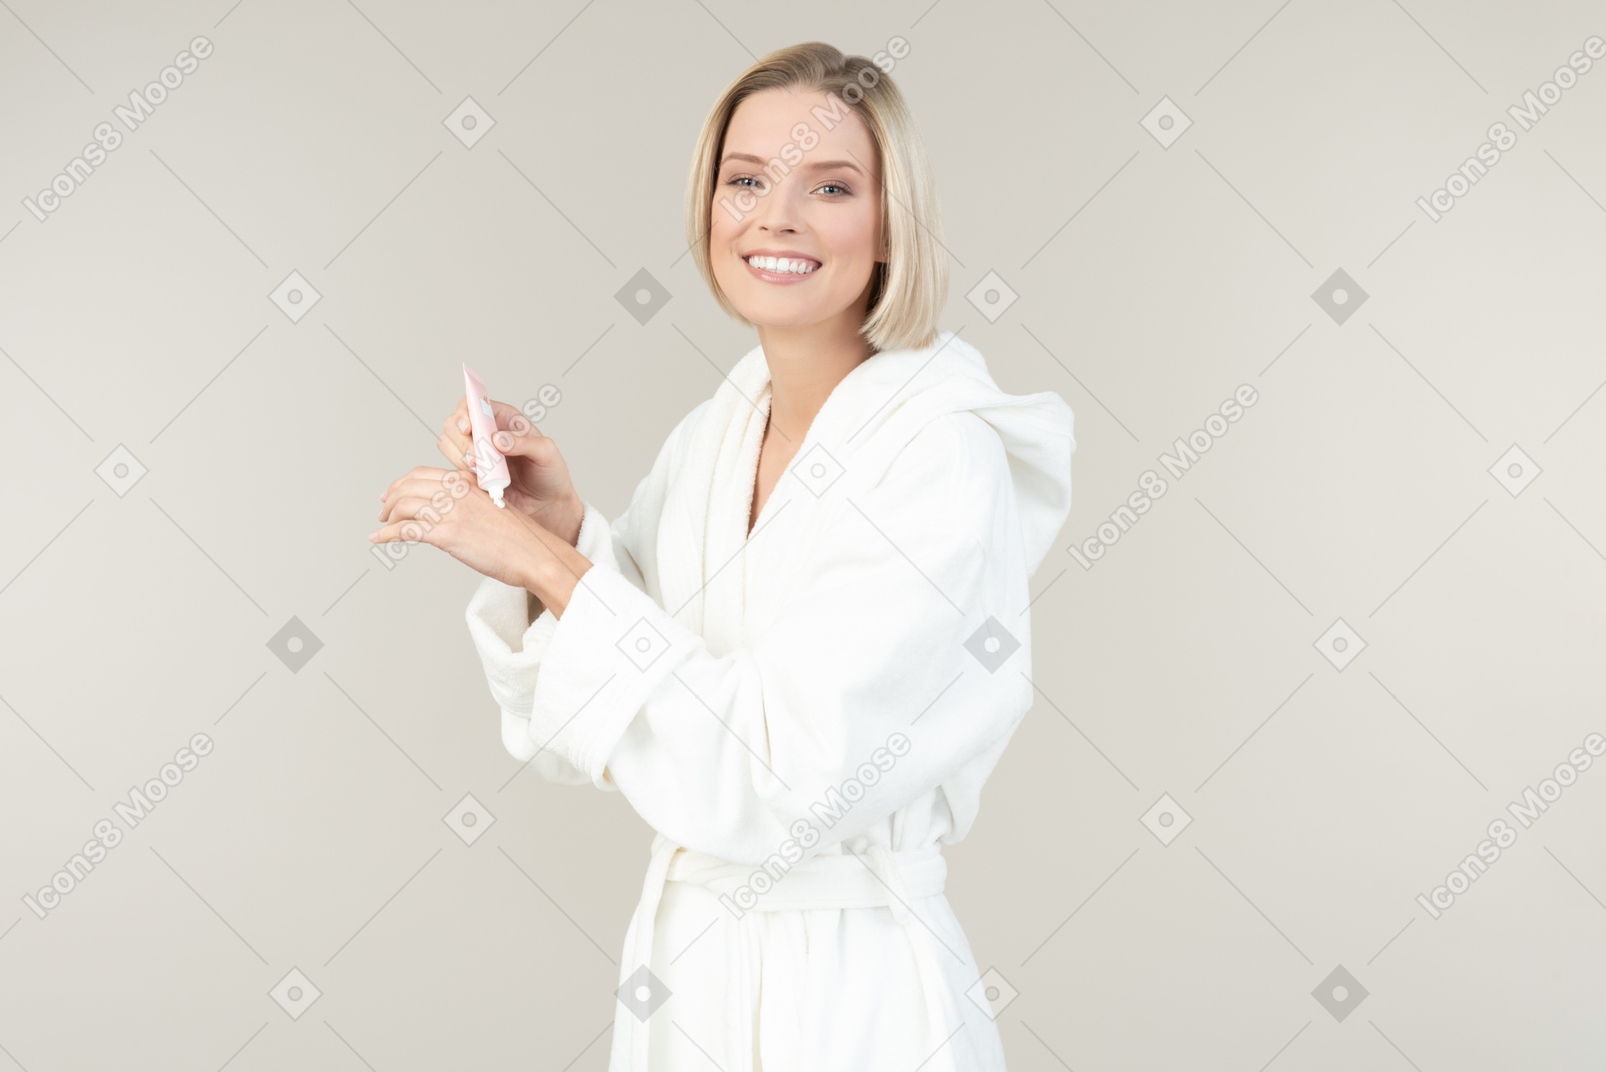 Jovem loira em um roupão branco posando com todos os tipos de produtos de higiene pessoal